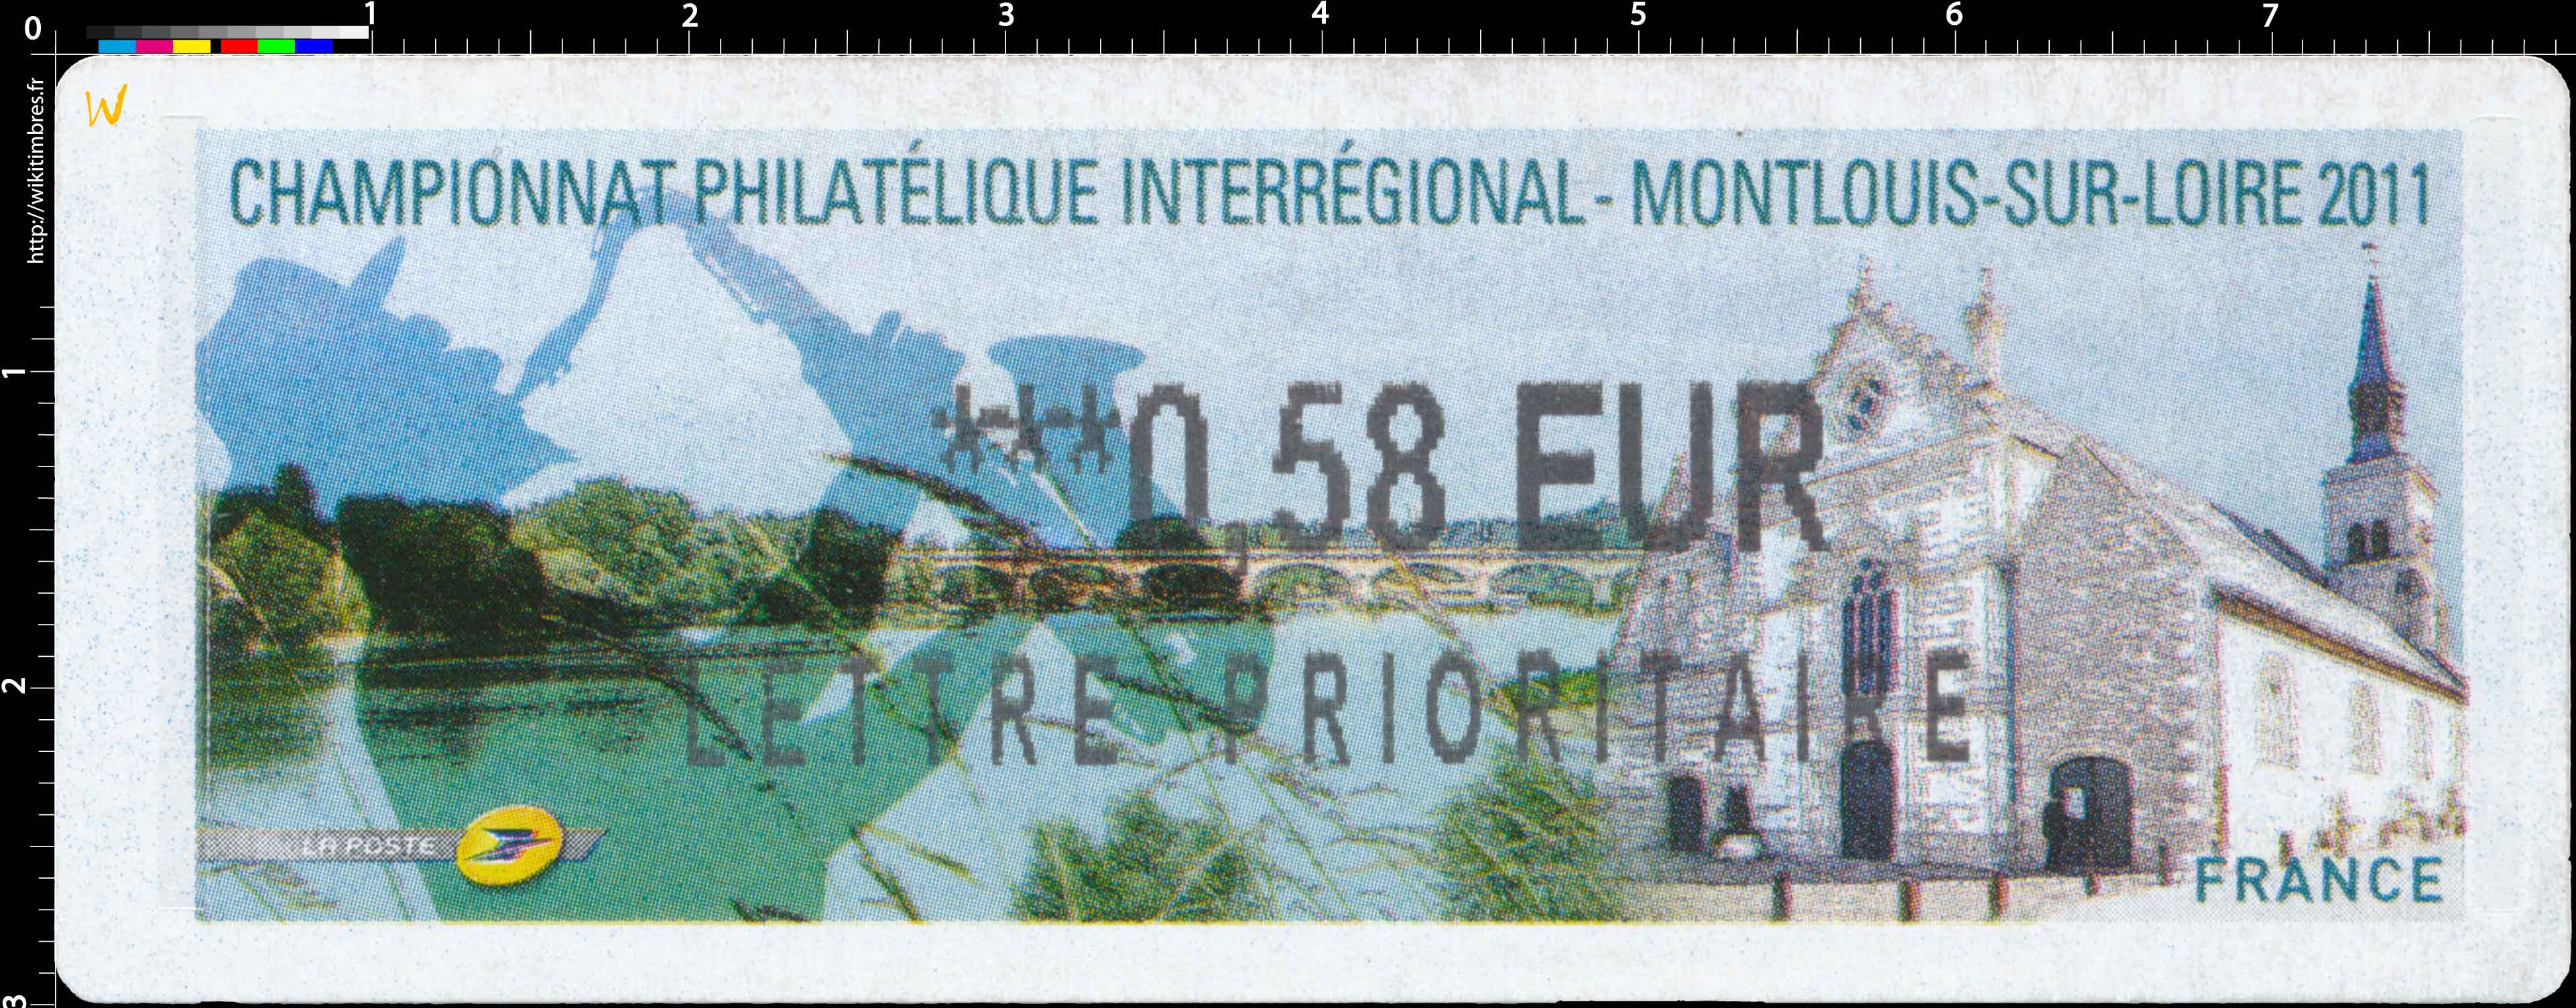 CHAMPIONNAT PHILATÉLIQUE INTERRÉGIONAL MONTLOUIS-SUR-LOIRE 2011